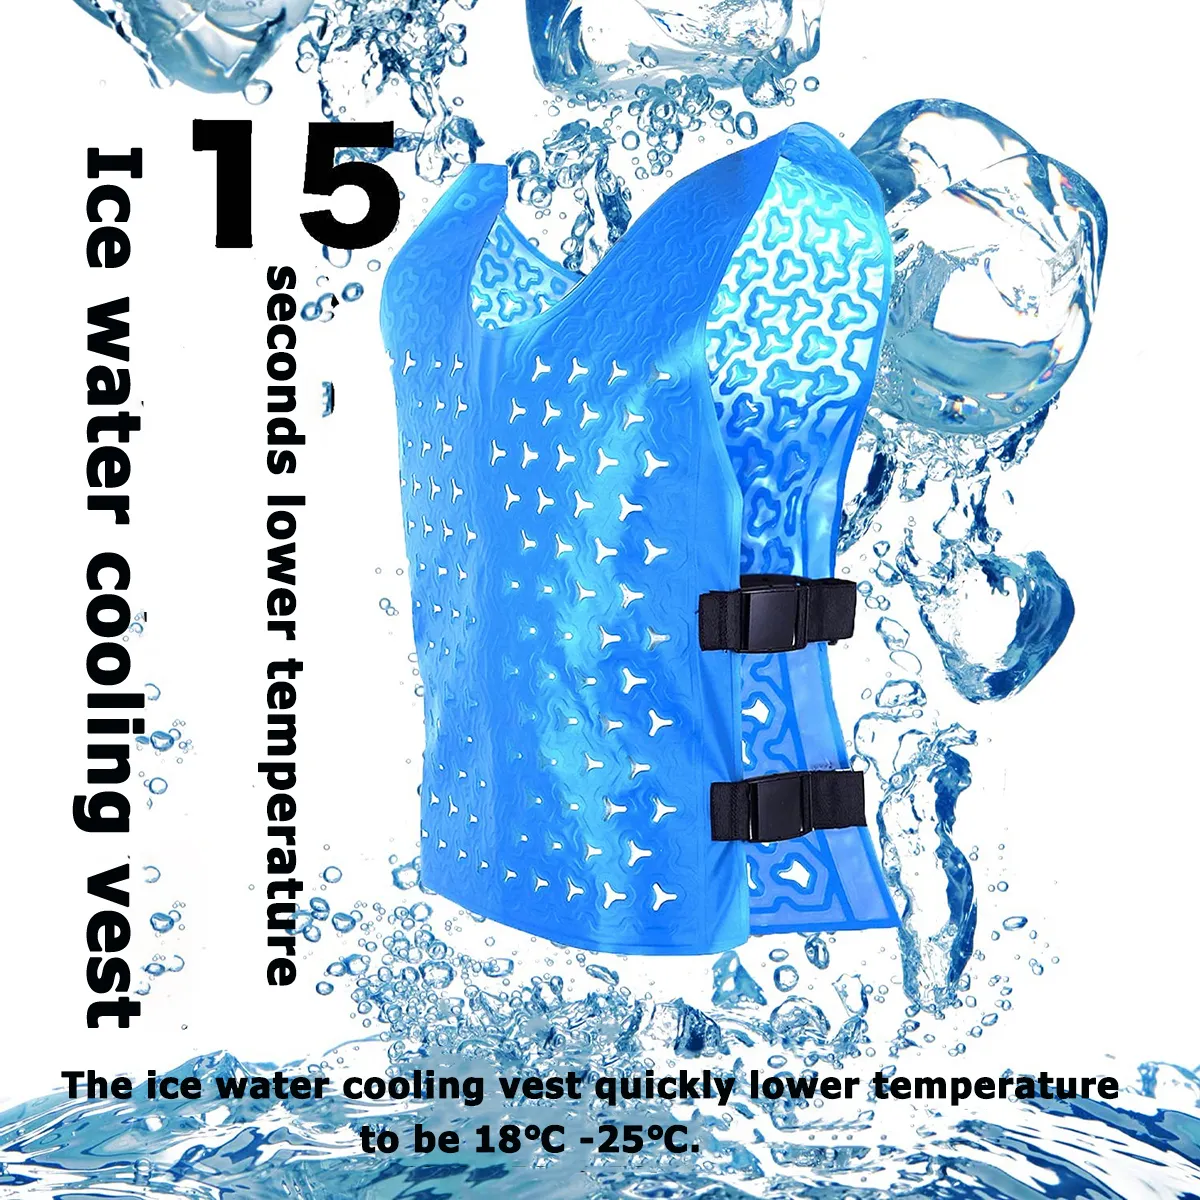 Temperatur verstellbarer Körper Coole Weste Beste Arbeits jacke im Freien Coole Kleider weste Für sommerliche coole Jacke